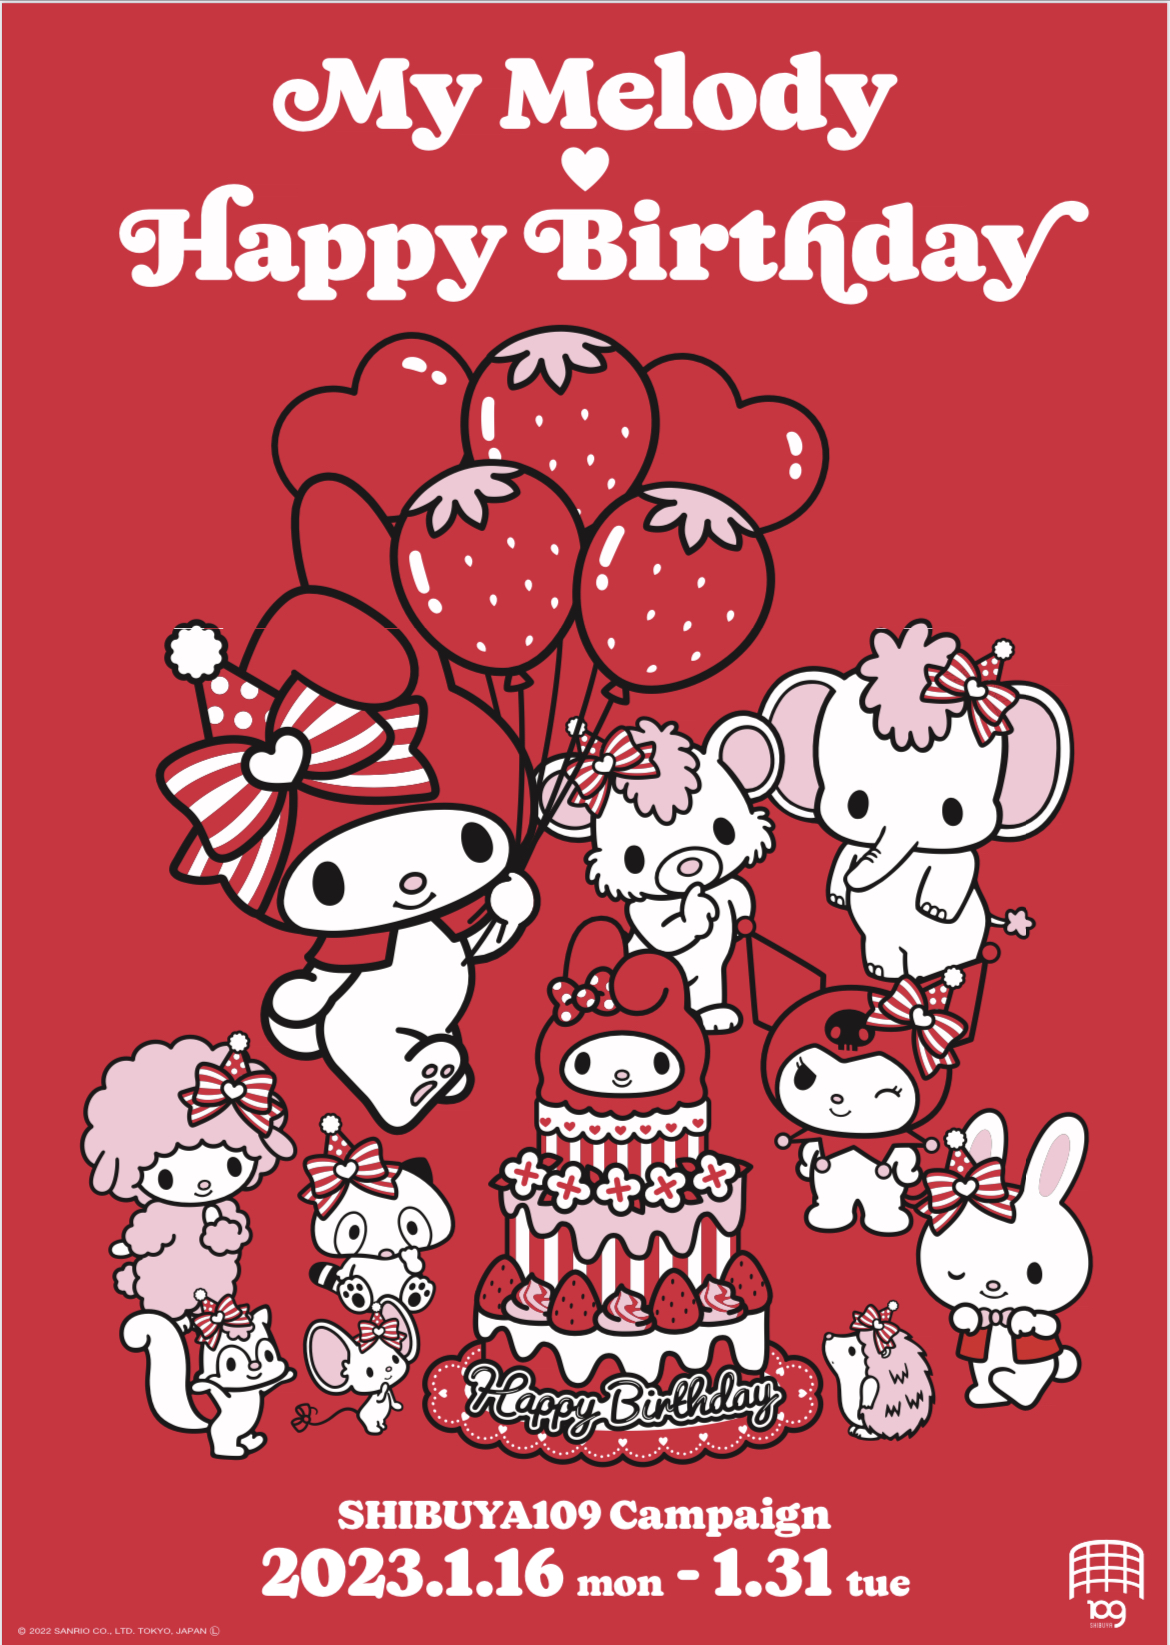 サンリオ人気キャラクター・マイメロディのバースデーをみんなでお祝いしよう♡『My Melody♡ Happy Birthday SHIBUYA109 Campaign』決定